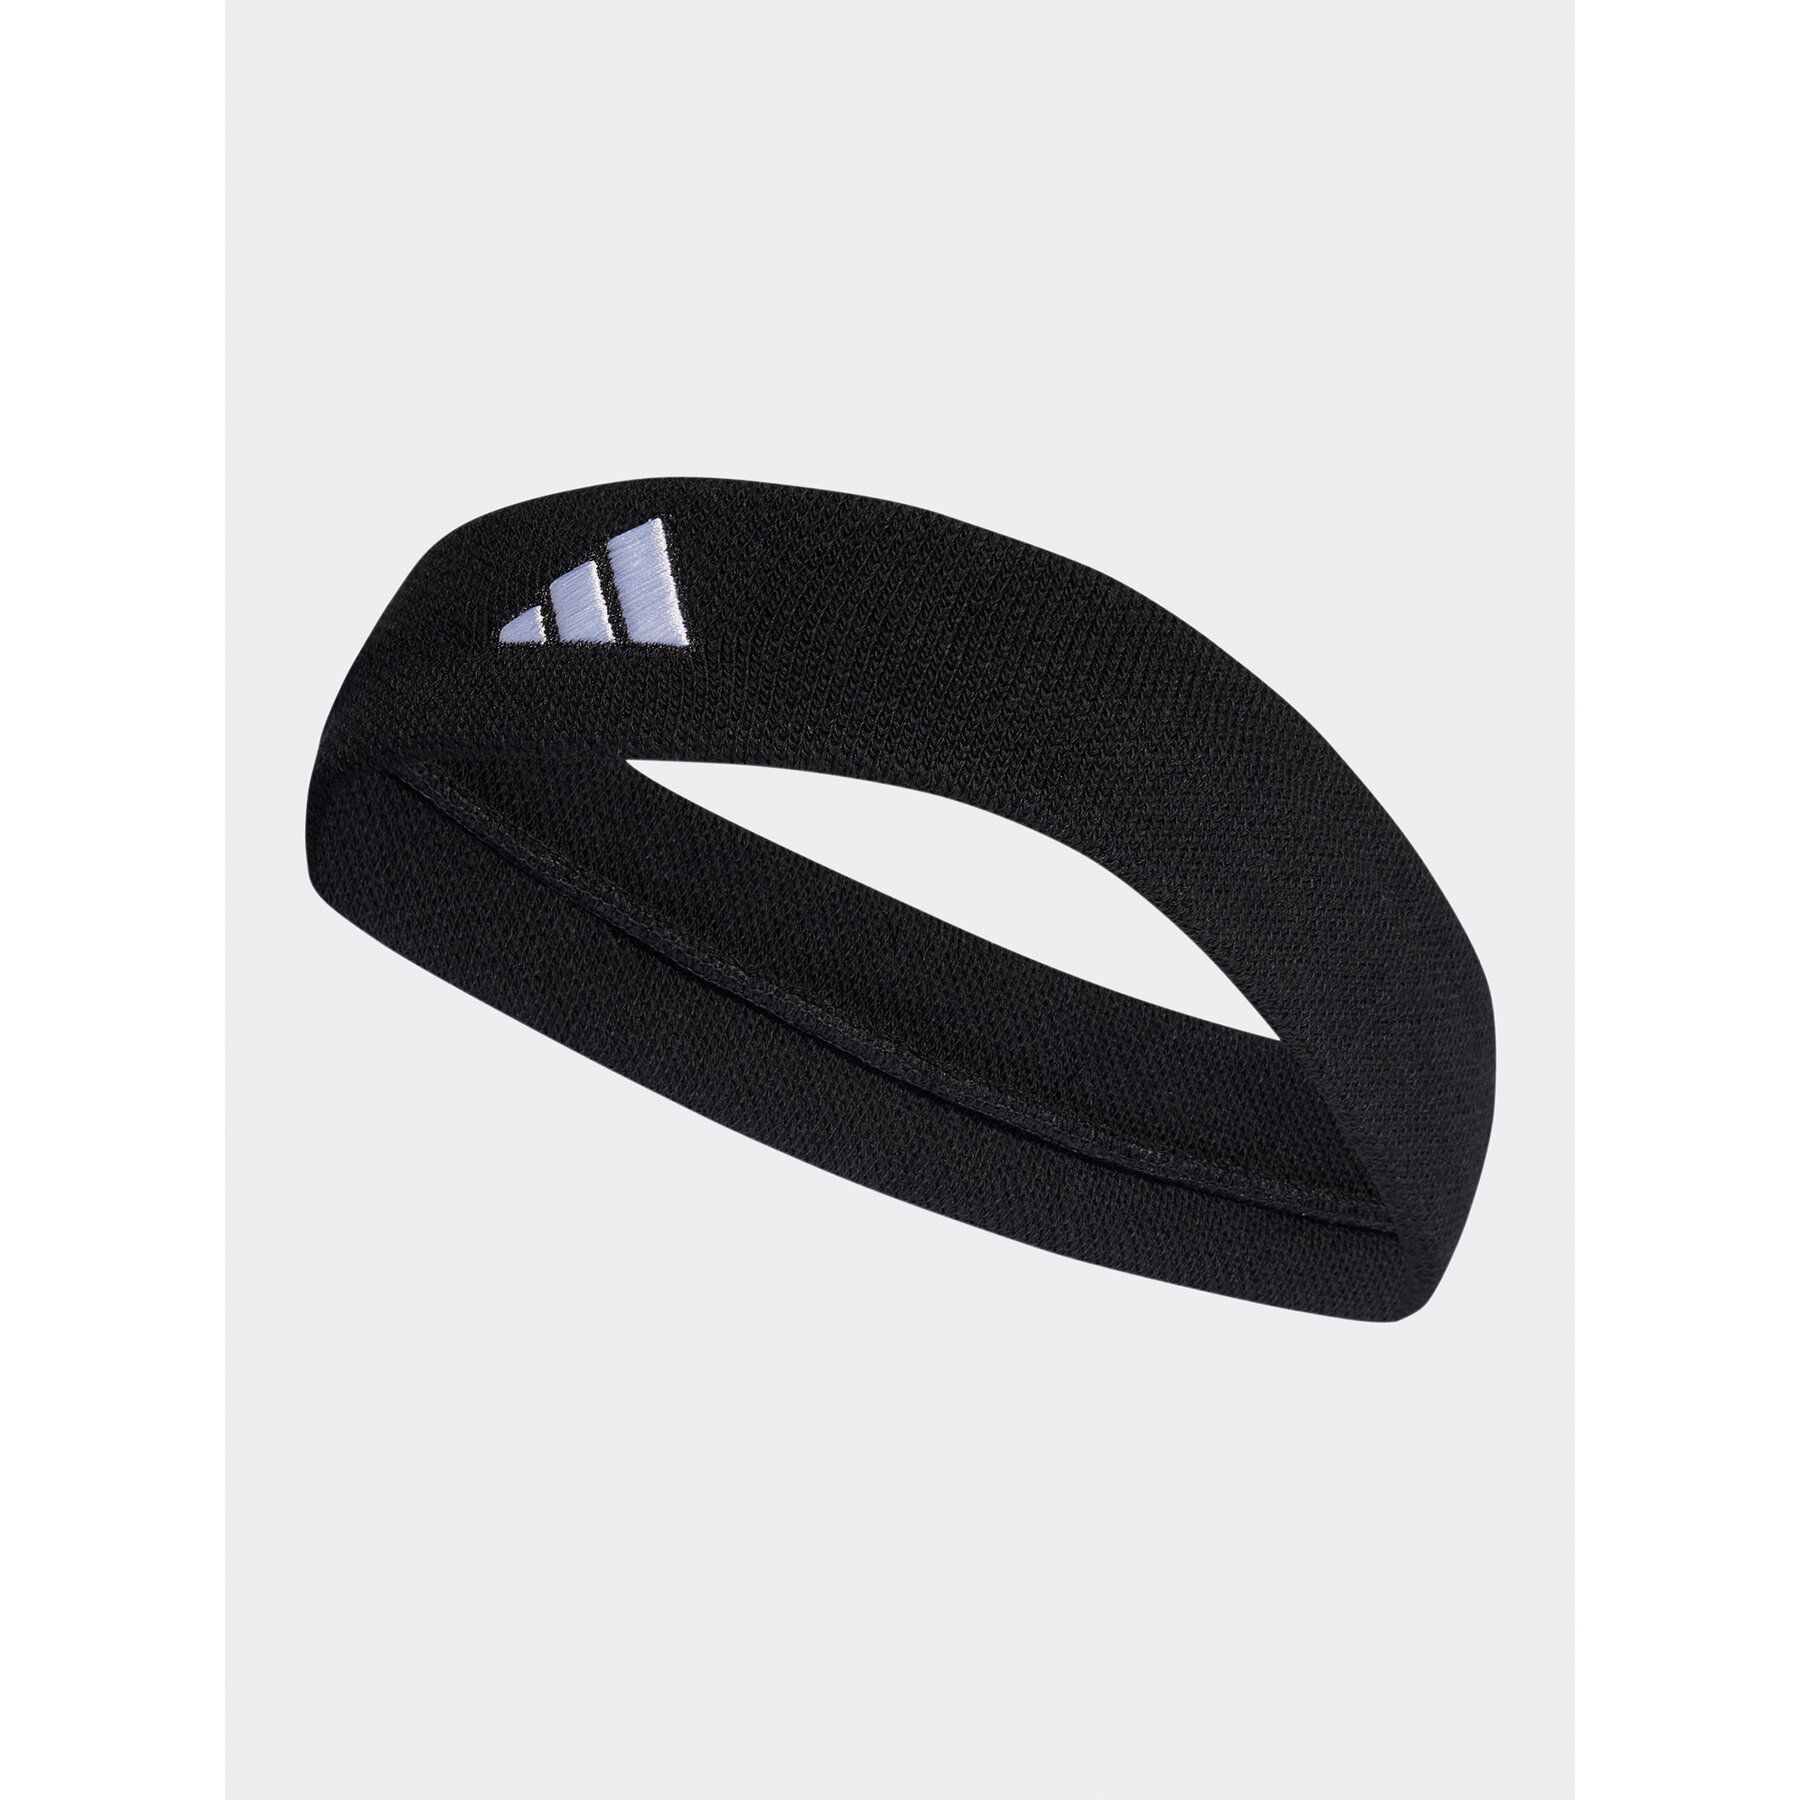 Stirnband adidas Tennis Headband HT3909 black/white von Adidas